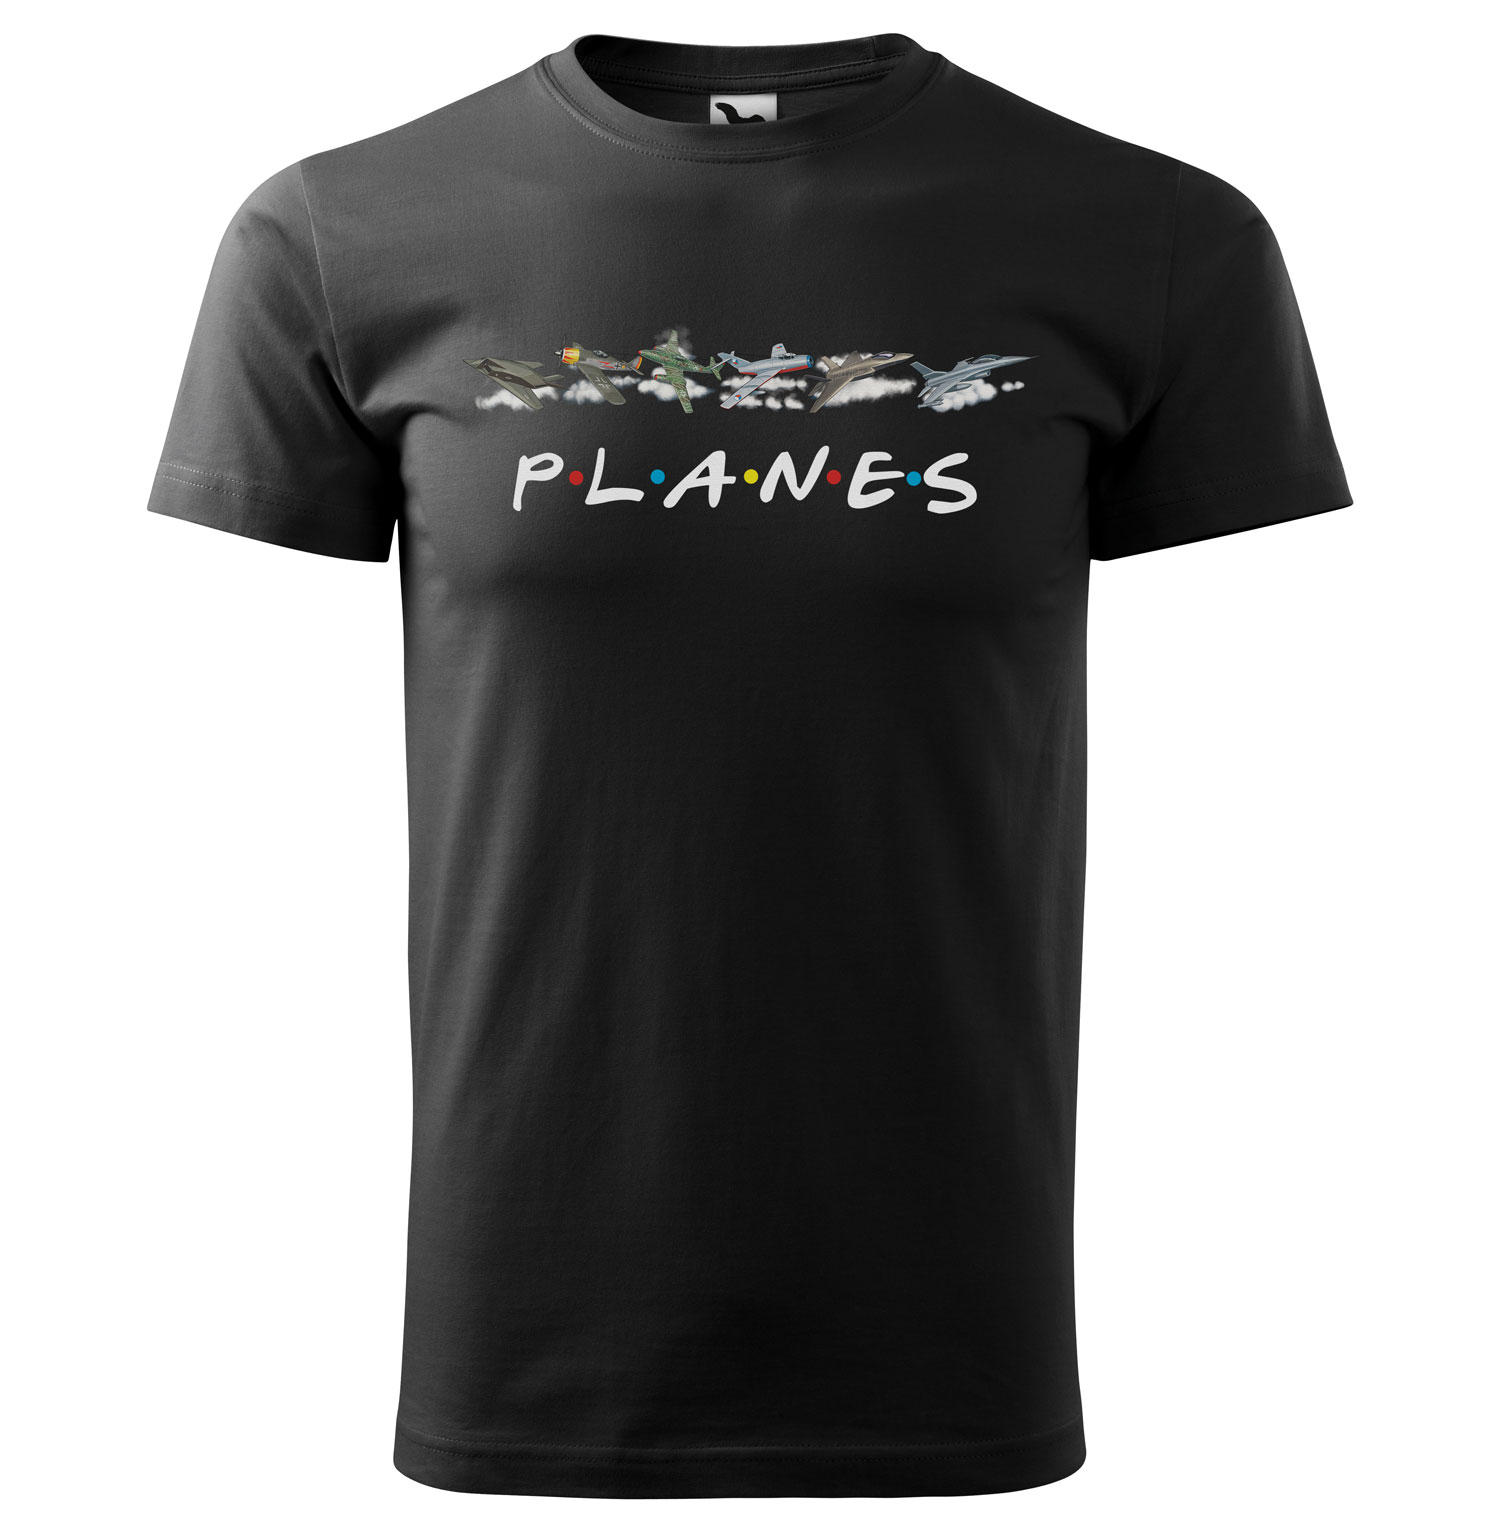 Tričko Planes (Velikost: 2XL, Typ: pro muže, Barva trička: Černá)